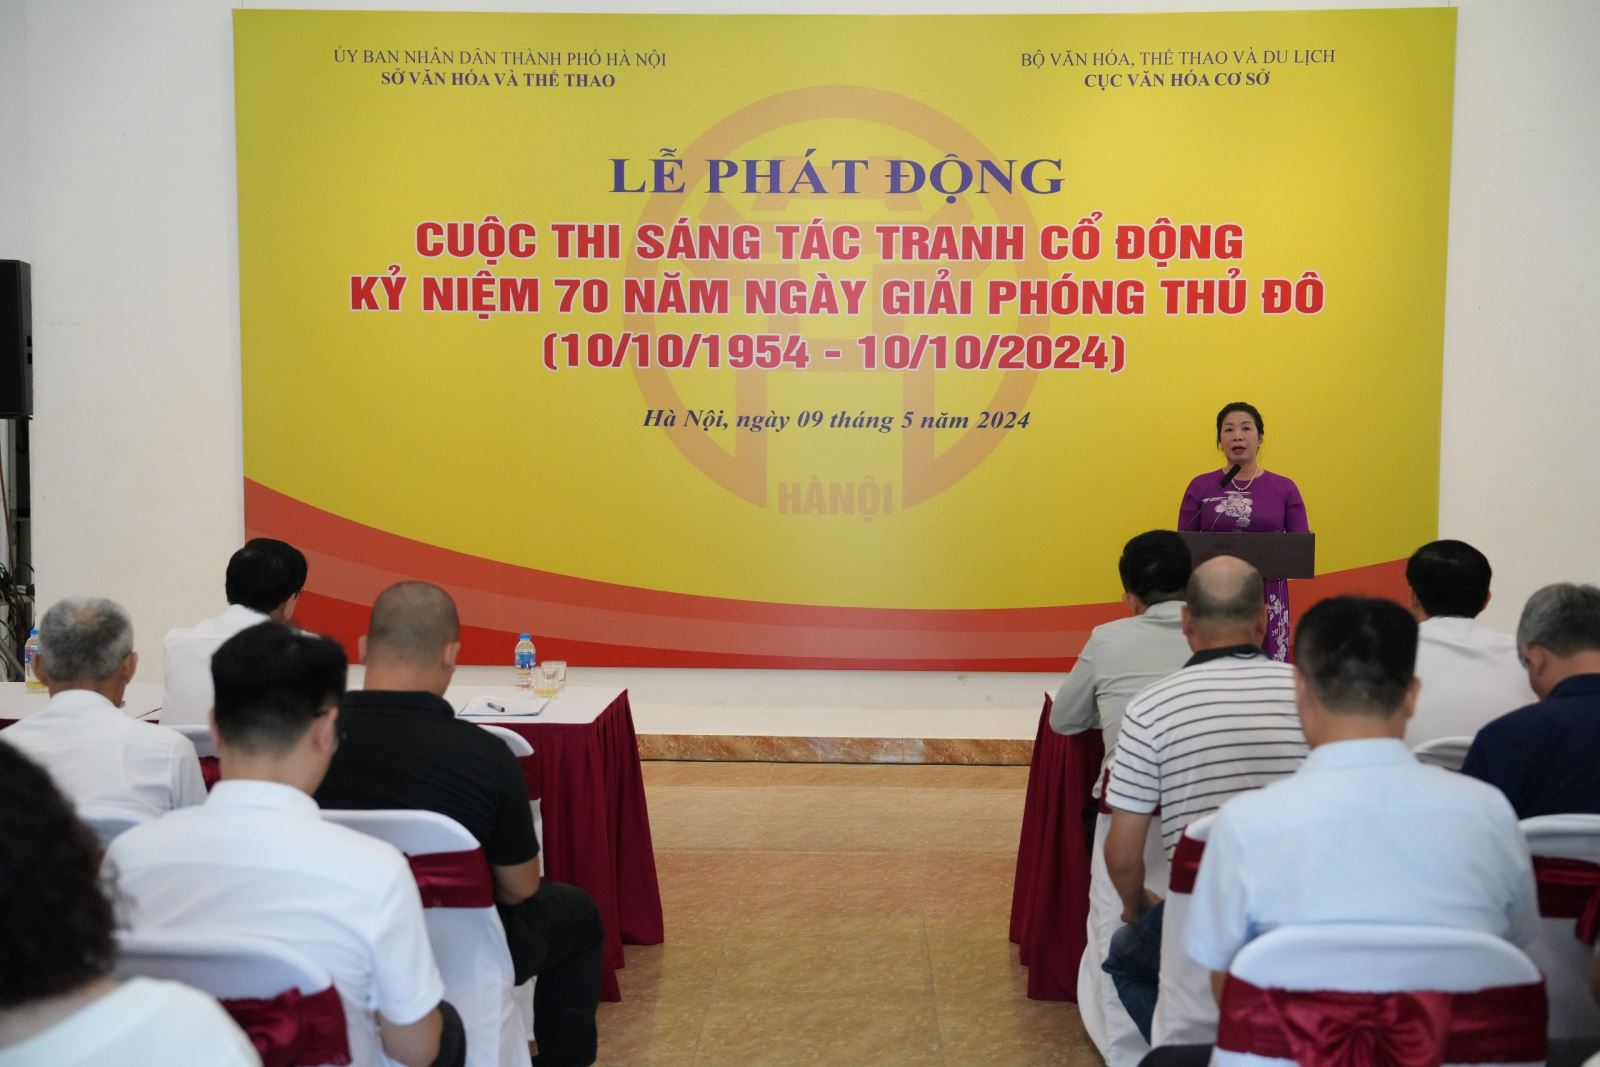 Ngày 9-5-2024, tại Hà Nội, Sở VHTT Hà Nội đã phối hợp với Cục Văn hóa cơ sở (Bộ VHTTDL) tổ chức lễ phát động Cuộc thi Sáng tác tranh cổ động tuyên truyền kỷ niệm 70 năm Ngày Giải phóng Thủ đô (10/10/1954 - 10/10/2024).